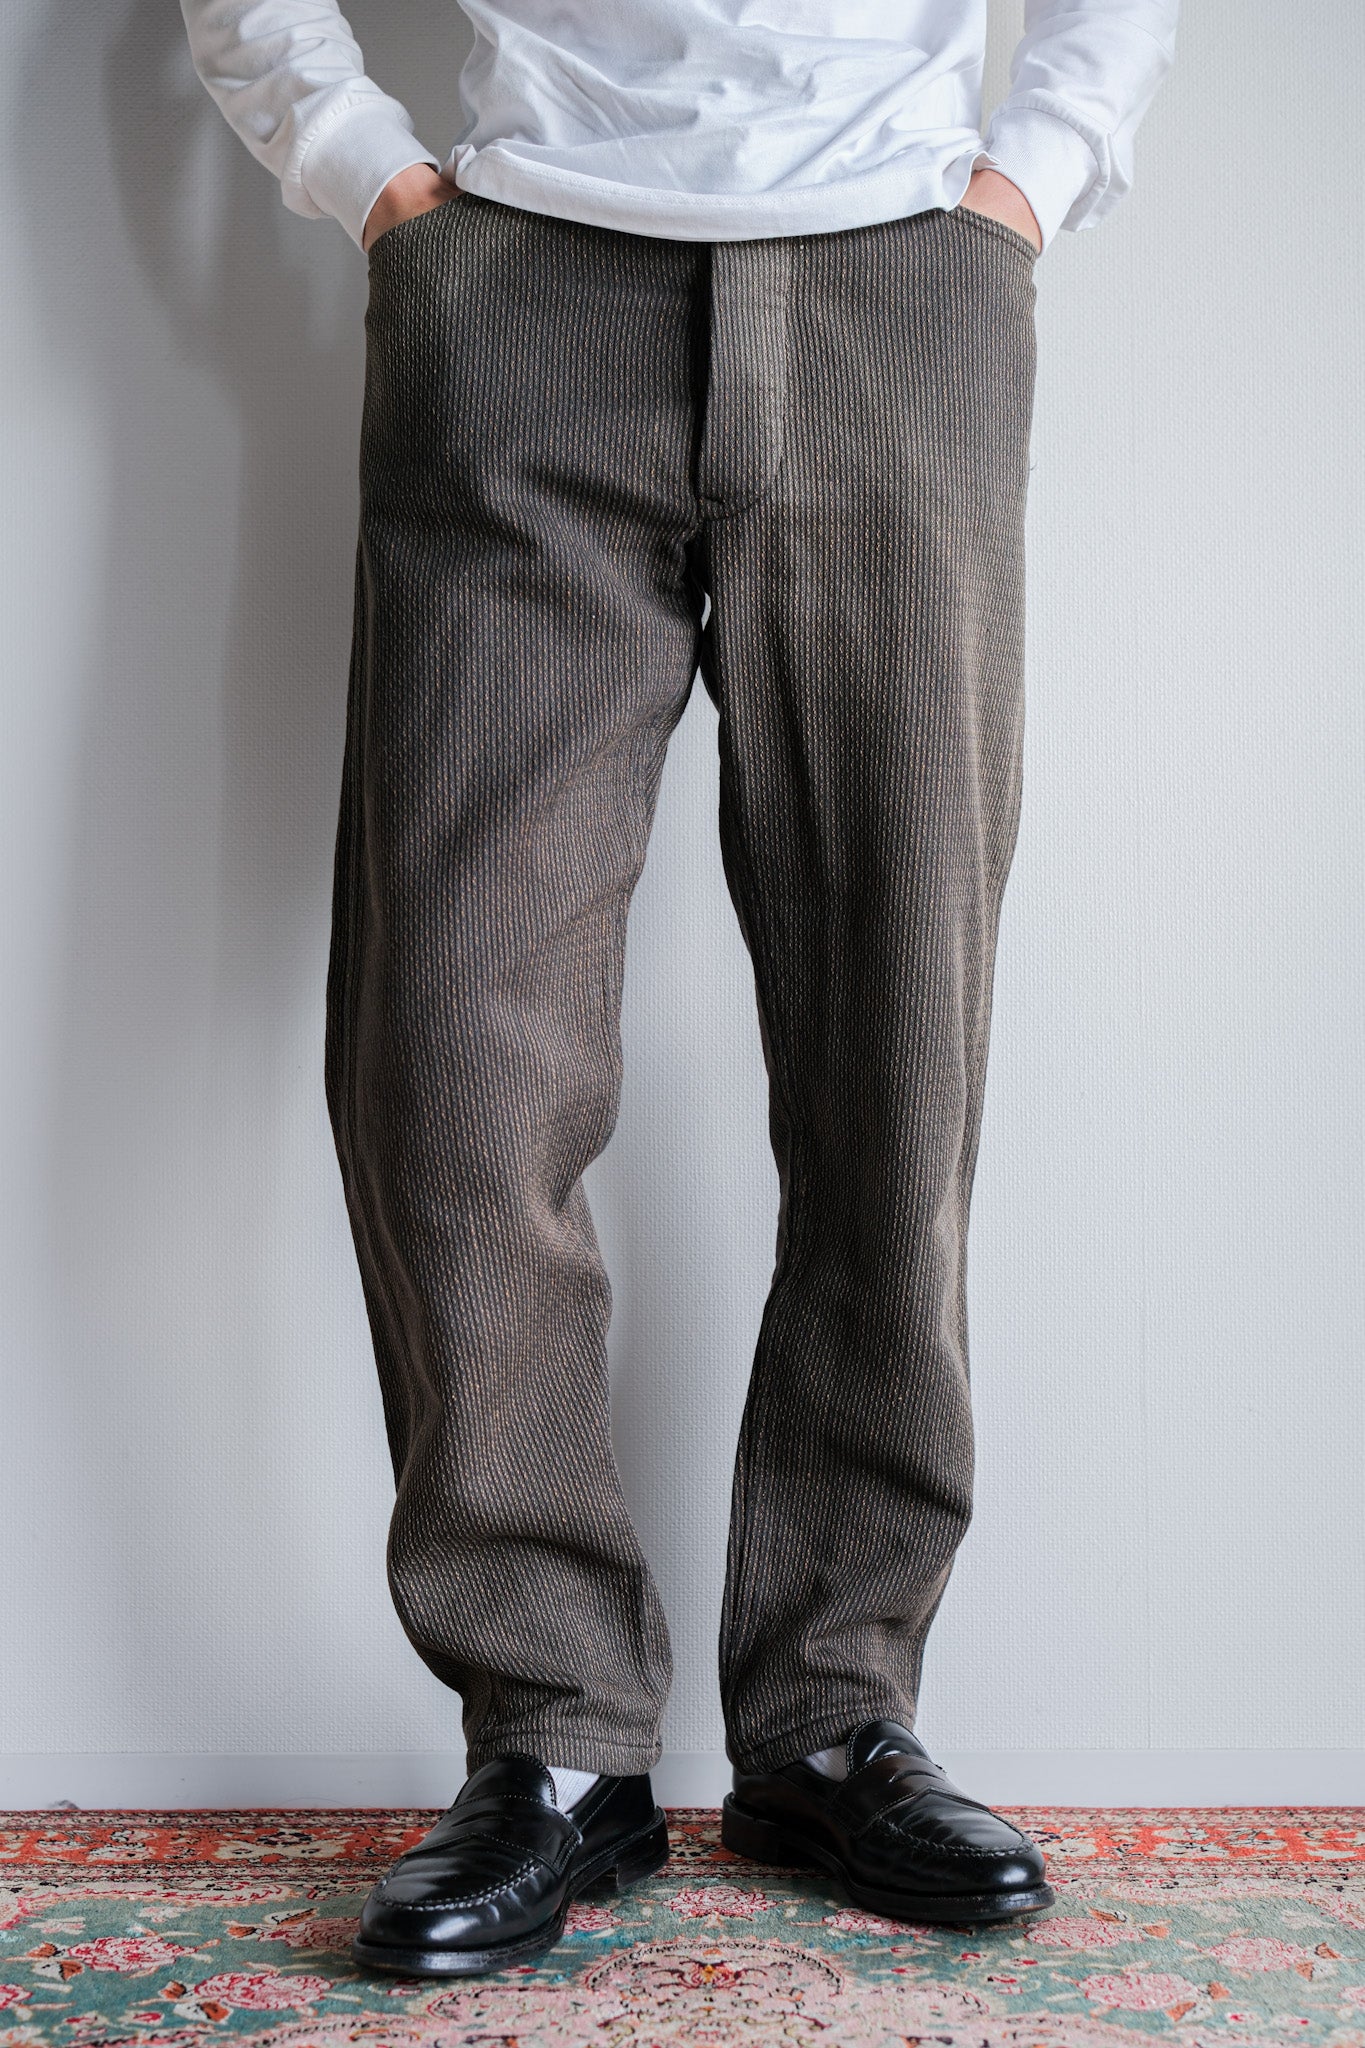 [〜50年代]法國複雜的混合棉質拼圖褲子尺寸。44-76“不尋常的面料”“ Le Montst。Michel”